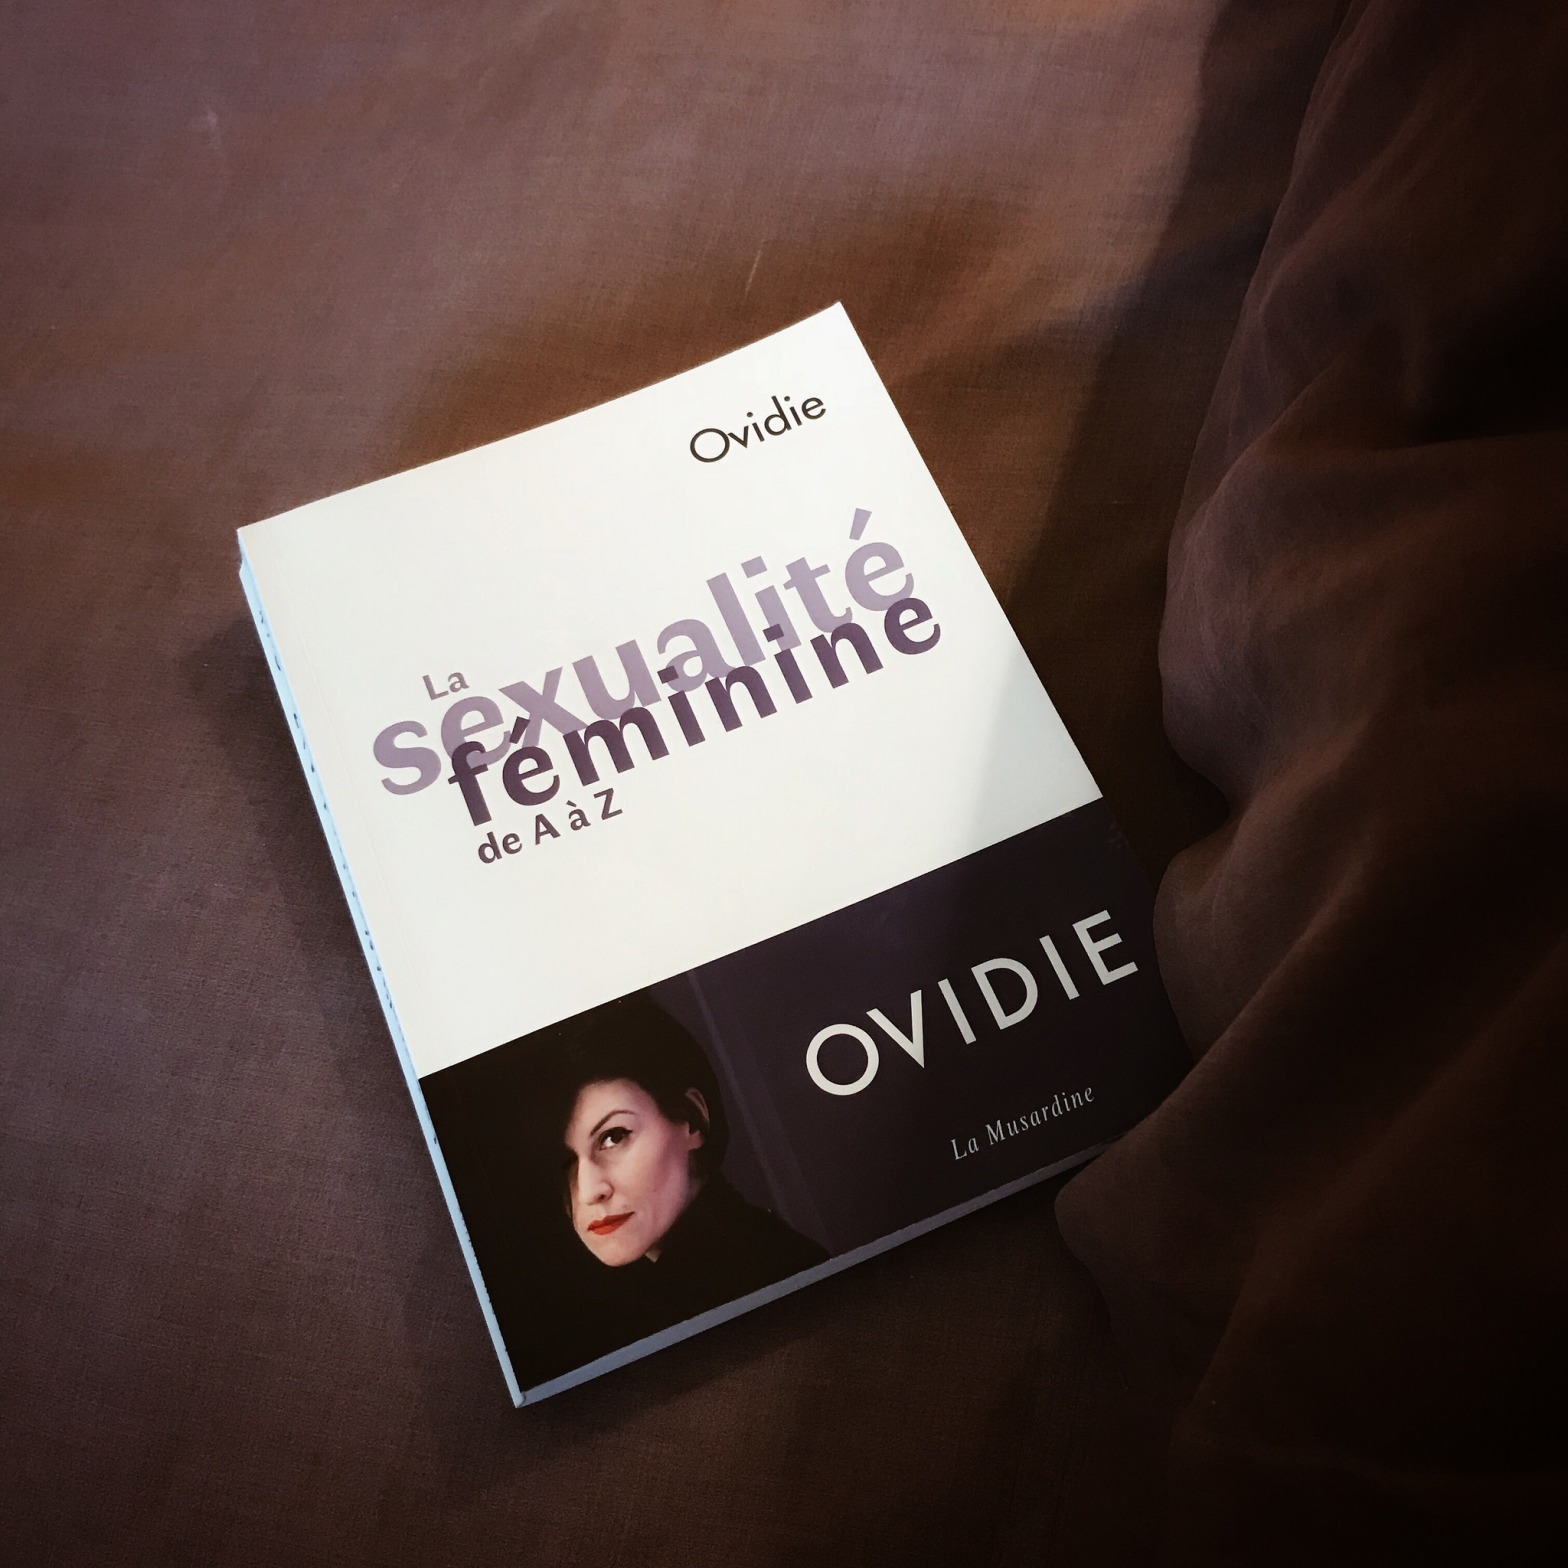 La sexualité féminine de A à Z d'Ovidie : tout ce que vous avez toujours voulu savoir sur le sexe